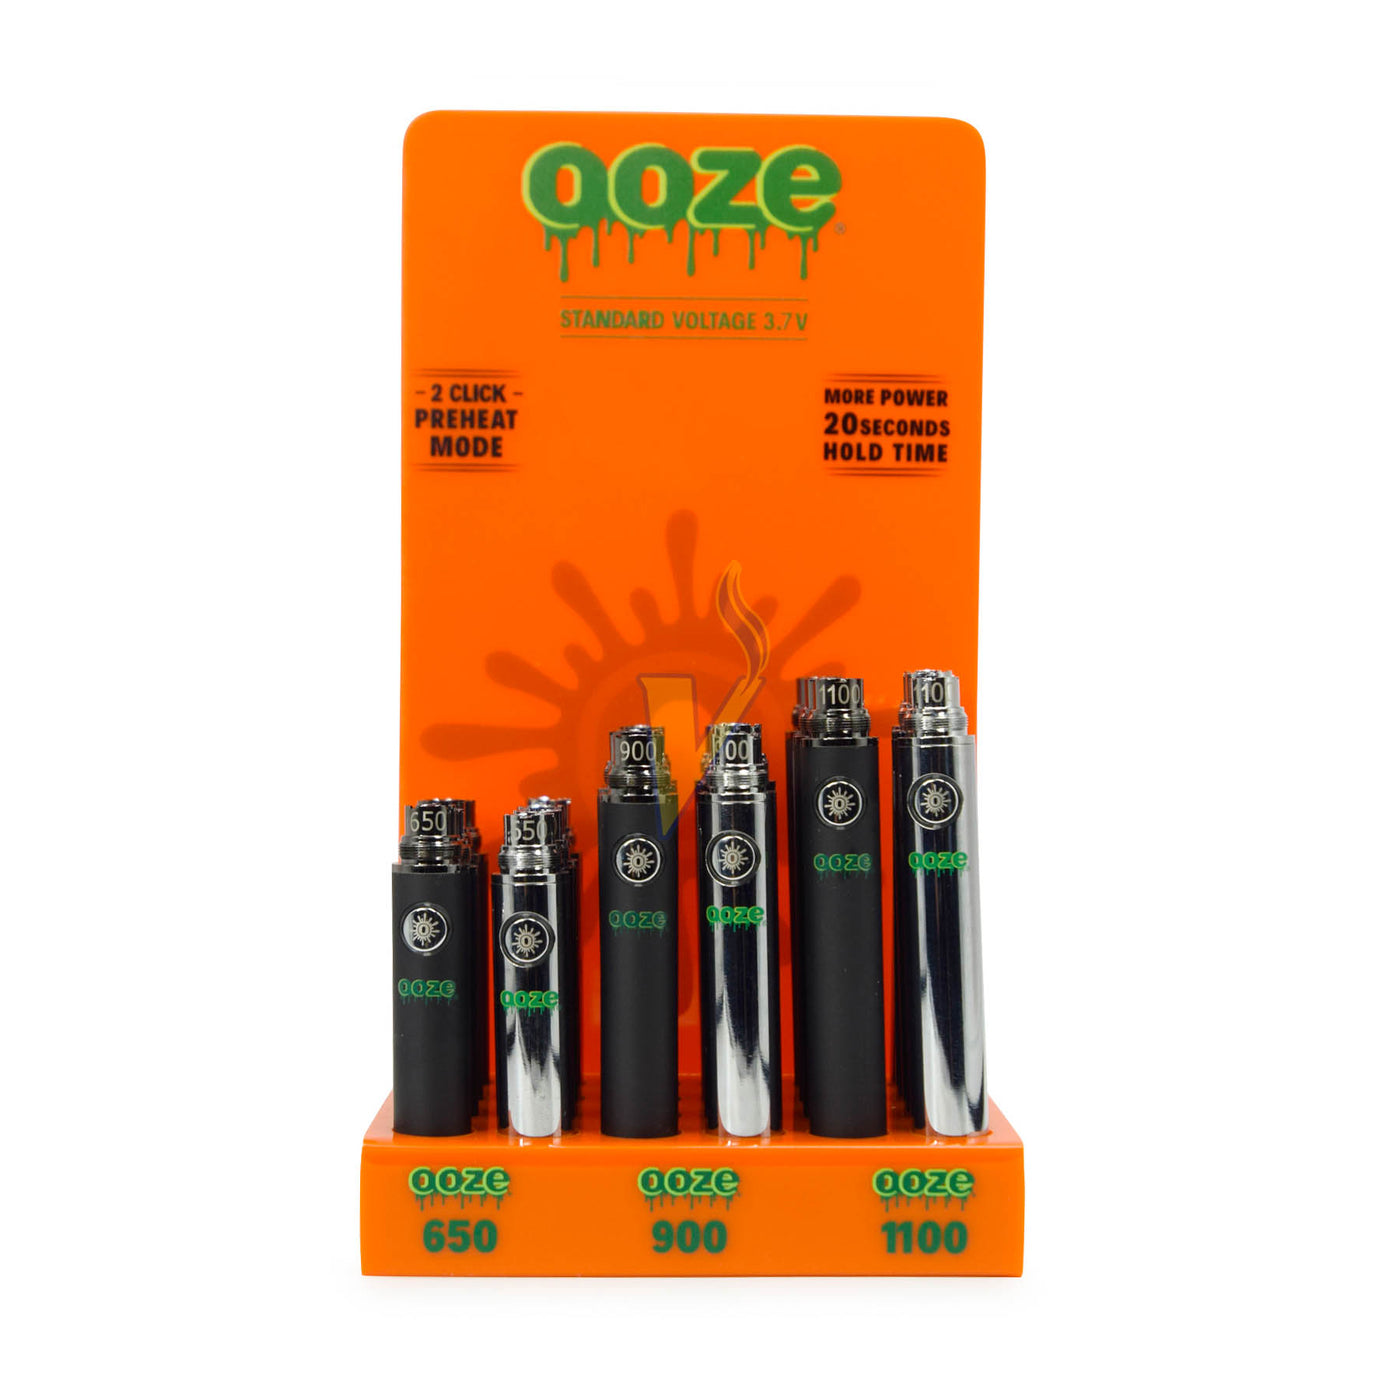 Ooze Standard Battery